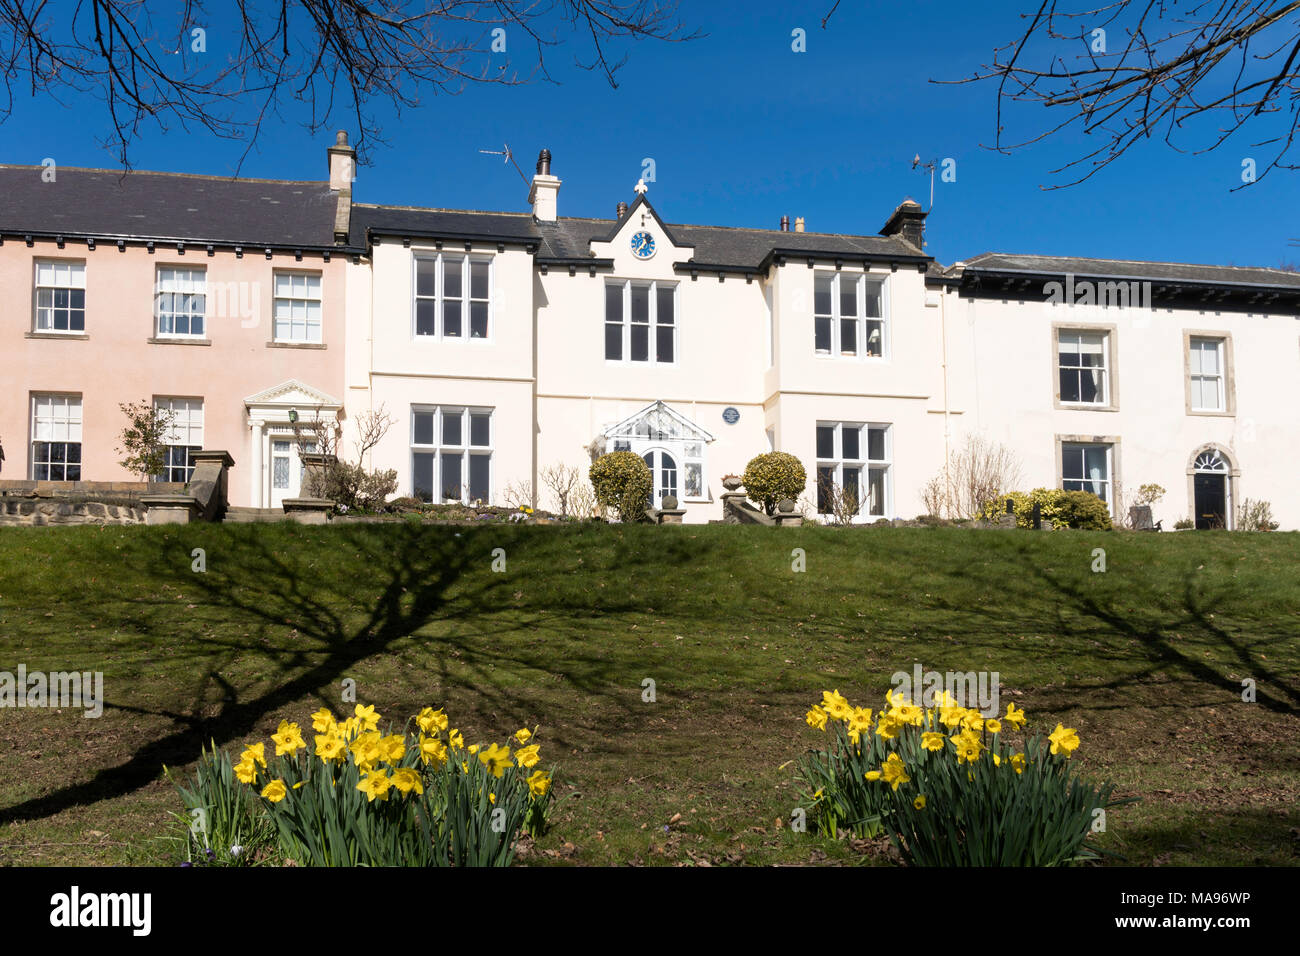 Les jonquilles en fleurs, le Hillcrest house, Whitburn VIllage, North East England, UK Banque D'Images